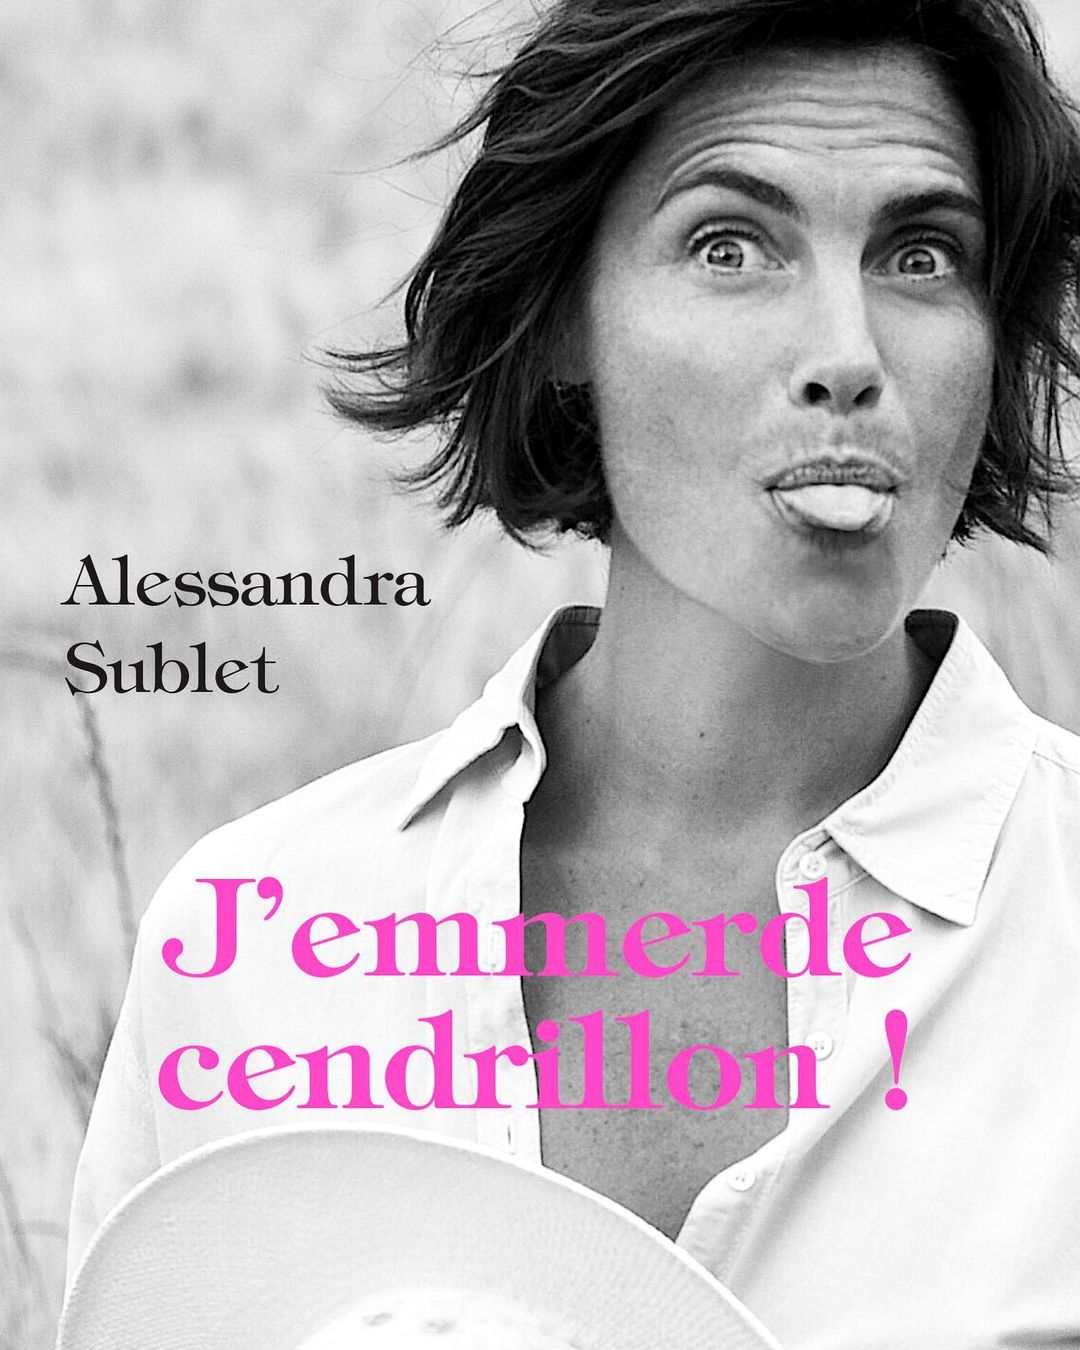 Alessandra Sublet évoque sa relation avec un tennisman ! " Il est mon ticket pour l’aventure"